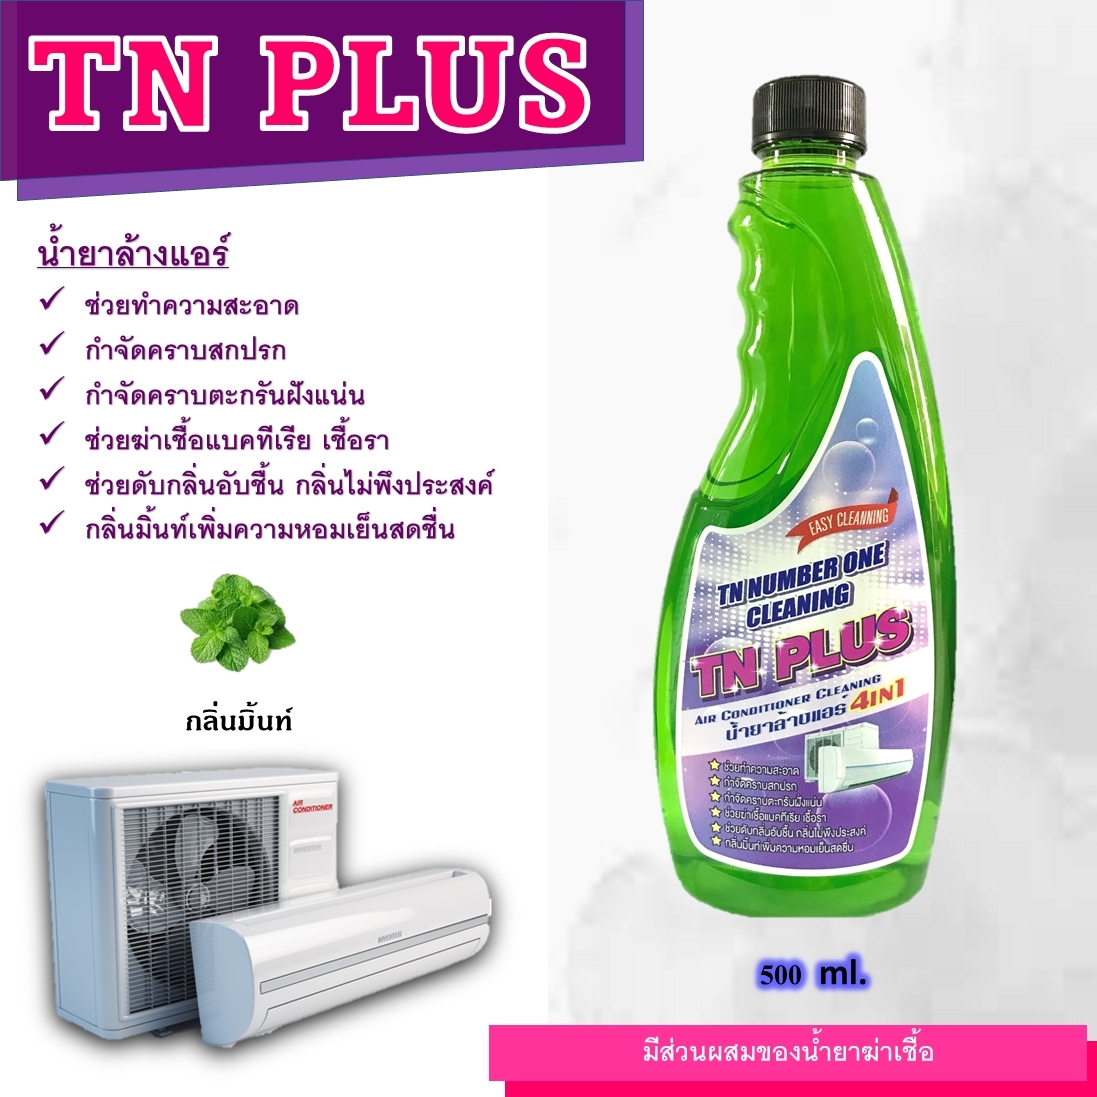 TN Plus น้ำยาล้างแอร์แบบ4in1 ช่วยทำความสะอาดช่วยฆ่าเชื้อแบคทีเรียช่วยดับกลิ่นไม่พึงประสงค์